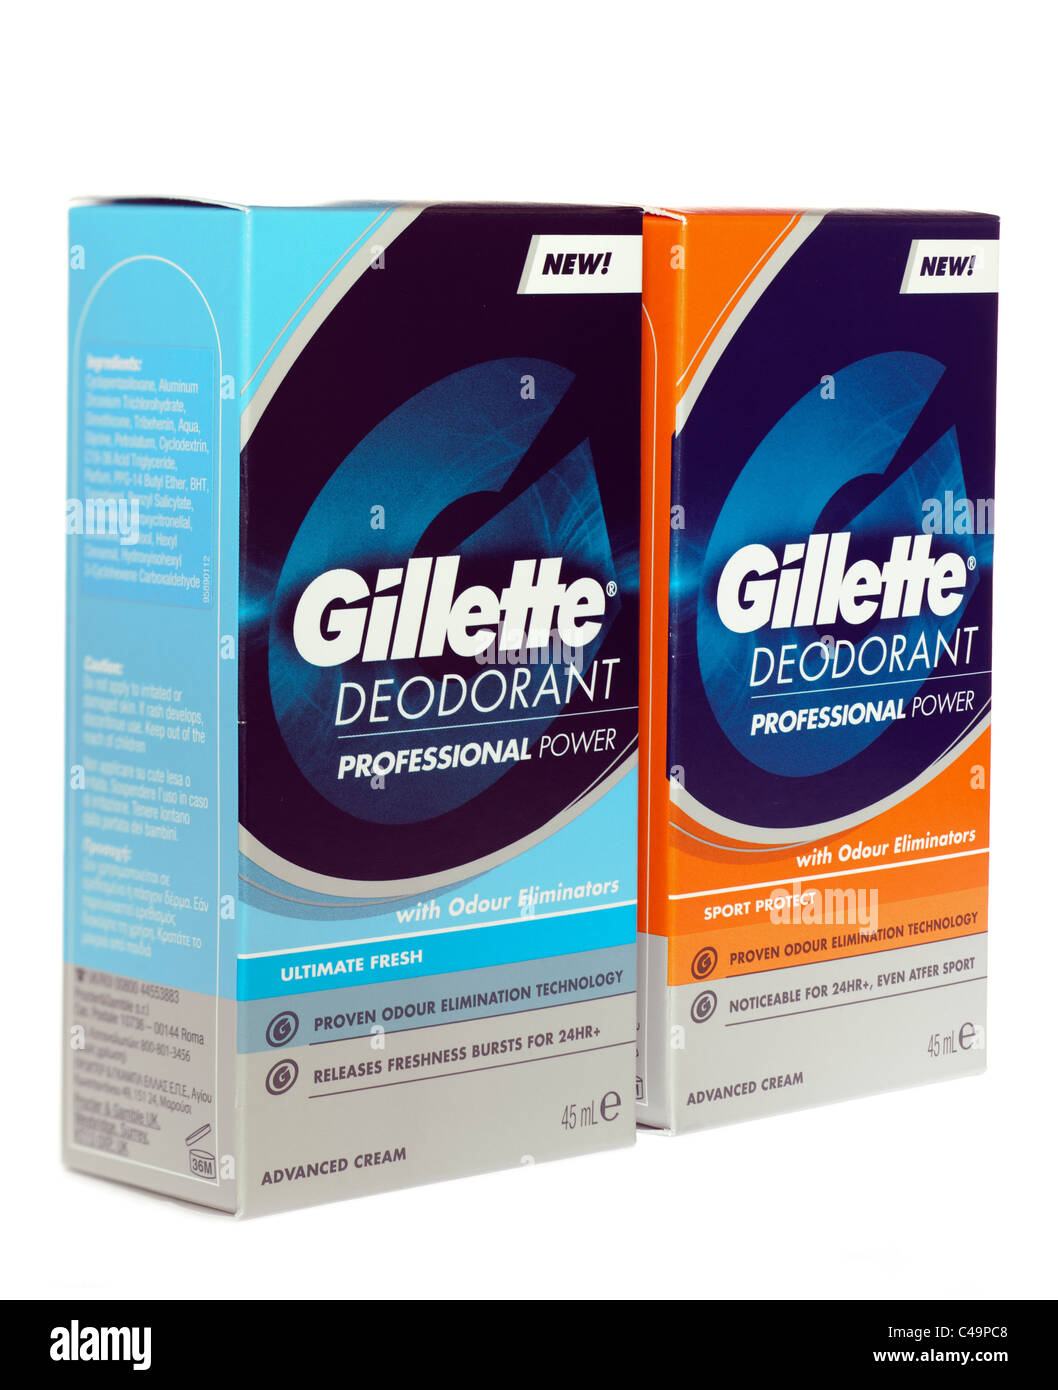 Deux aisselles déodorant Gillette en boîte les distributeurs de crème fraîche ultime et Sport Banque D'Images